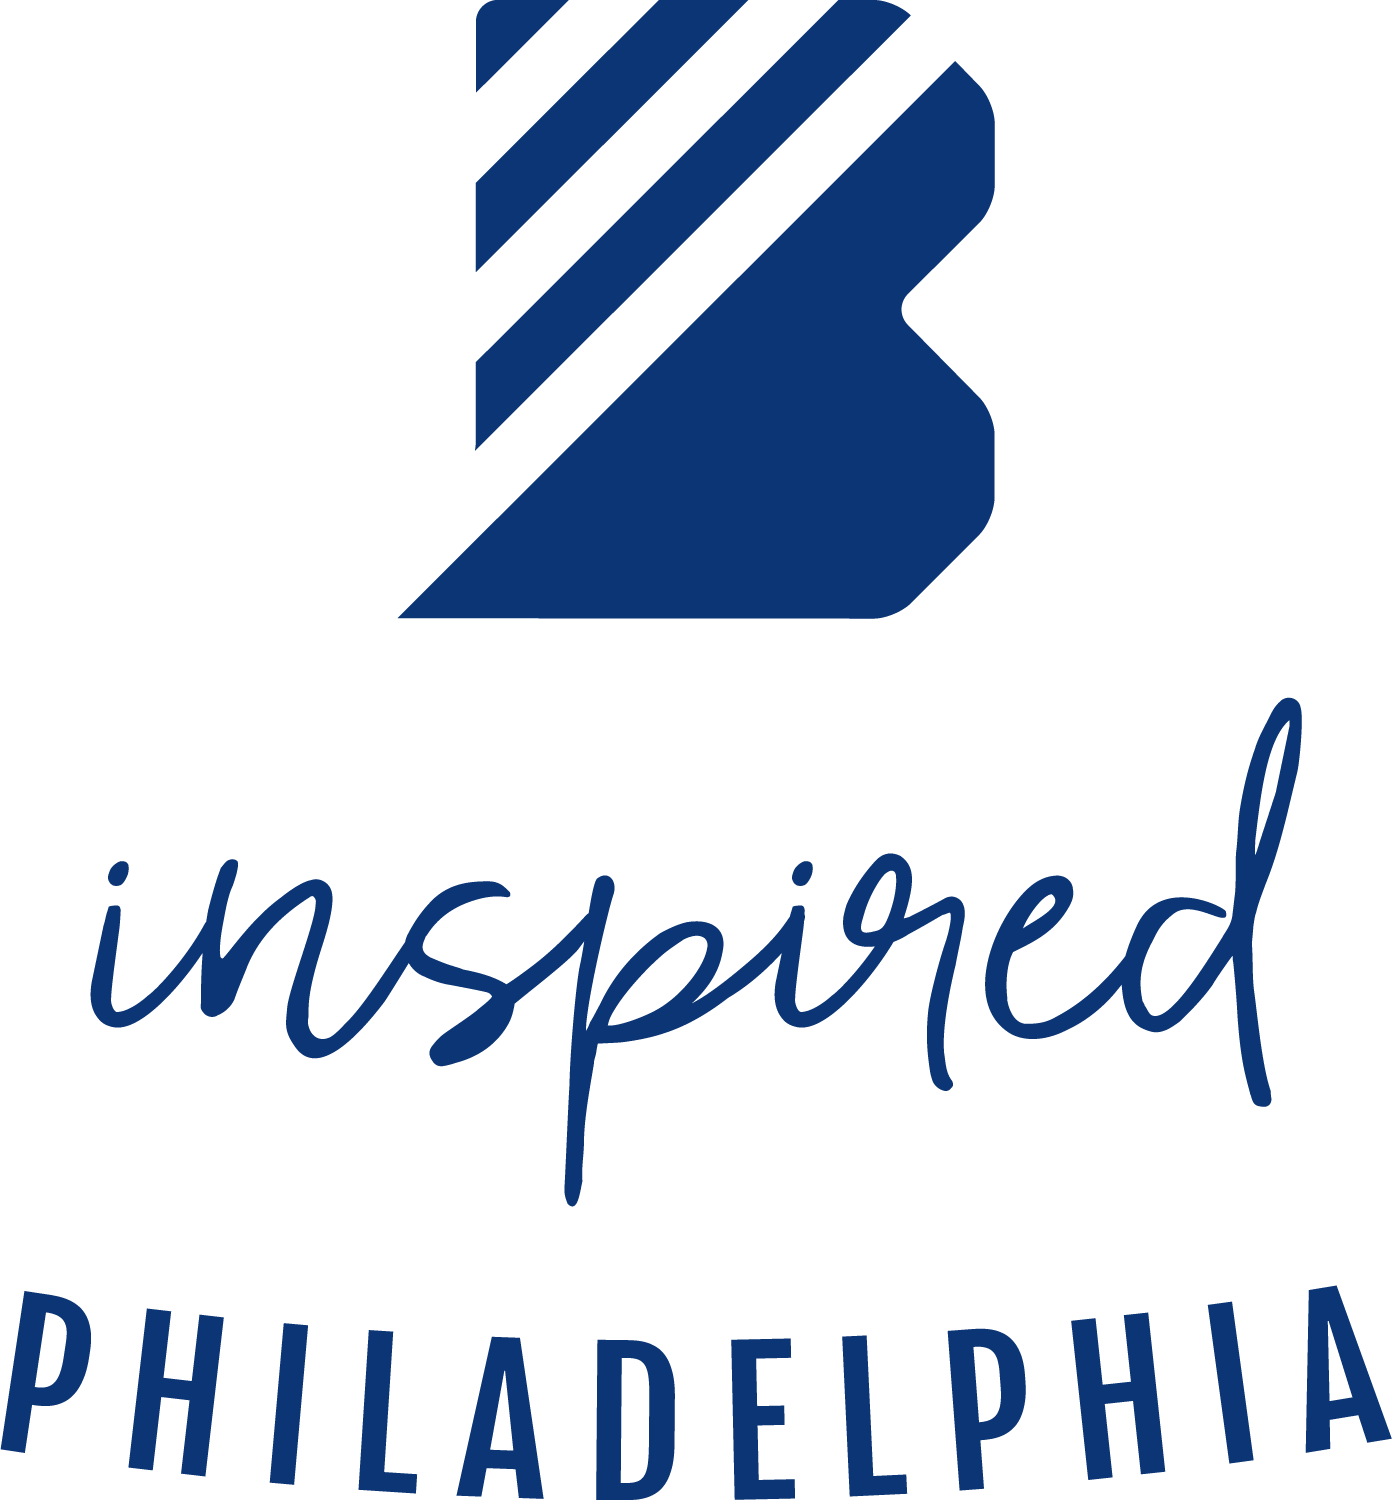 B Inspired Philadelphia